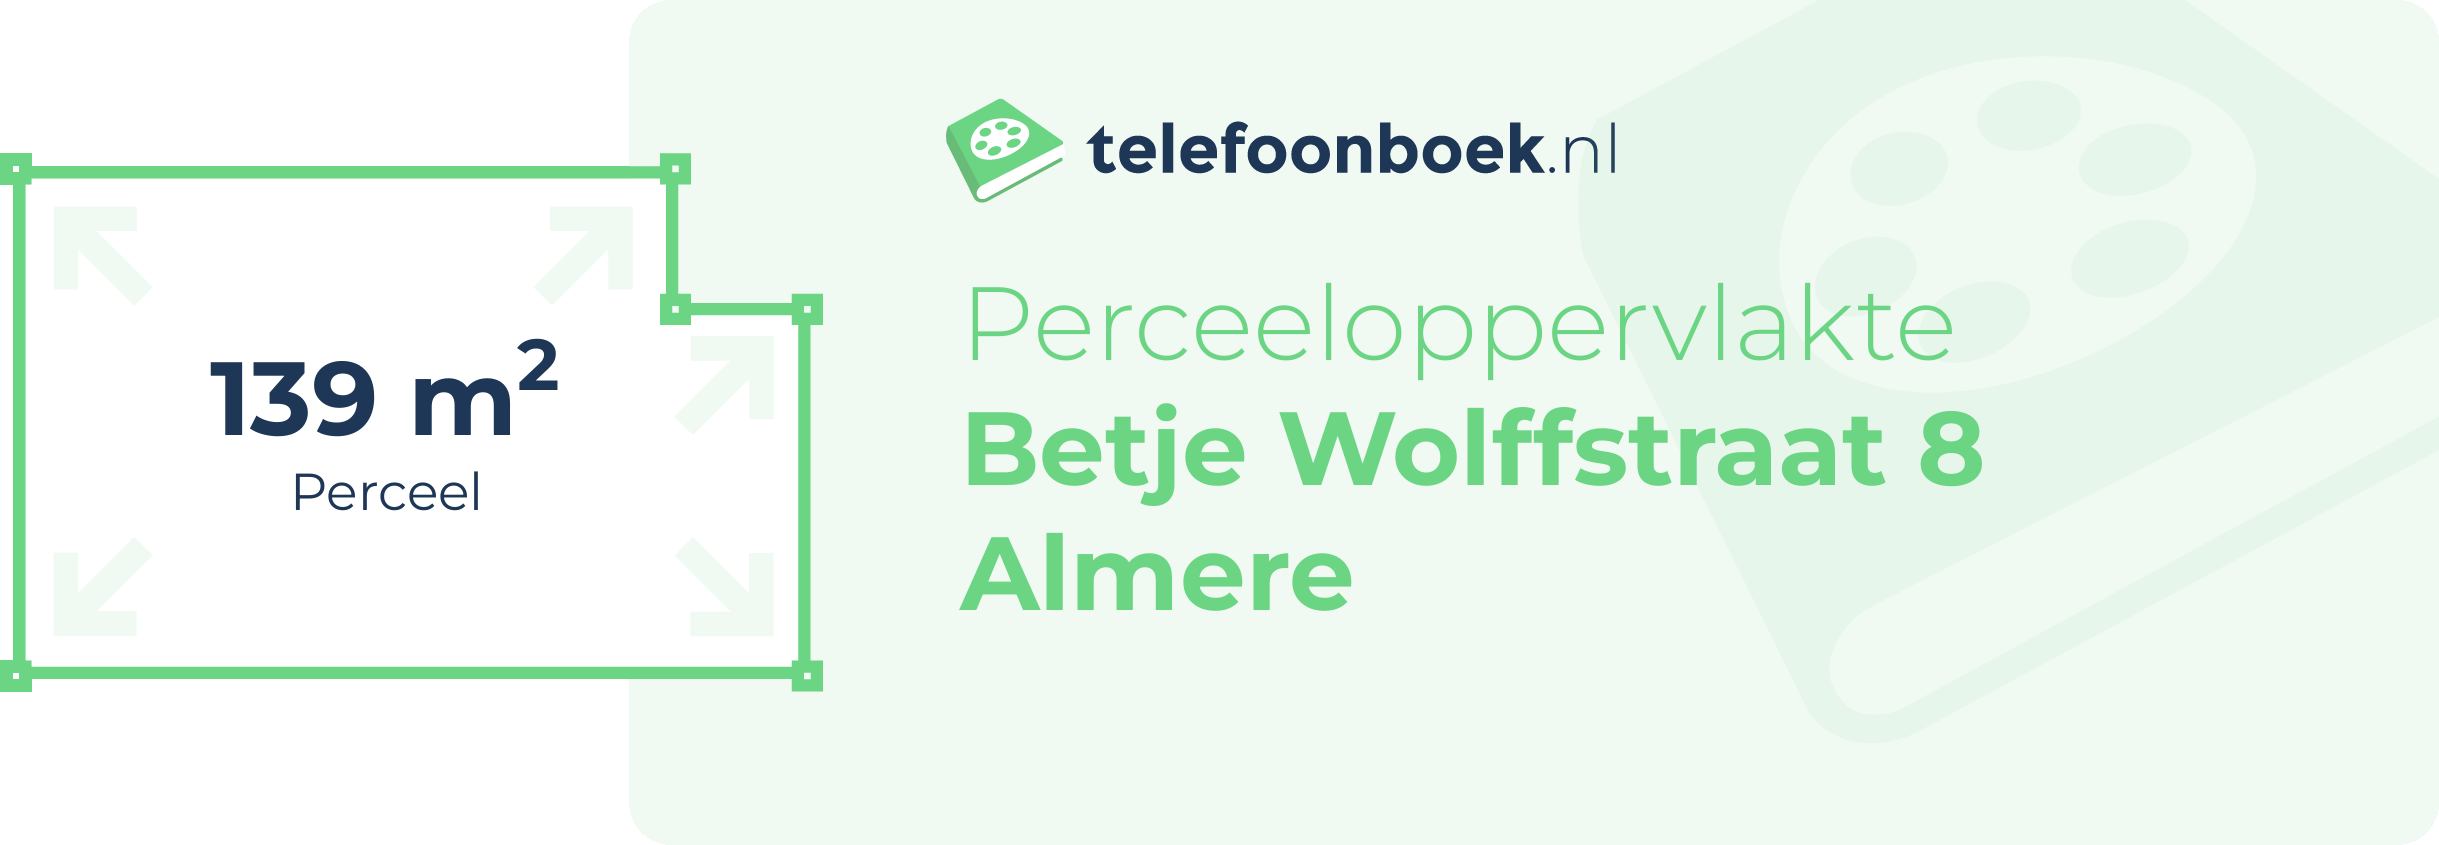 Perceeloppervlakte Betje Wolffstraat 8 Almere